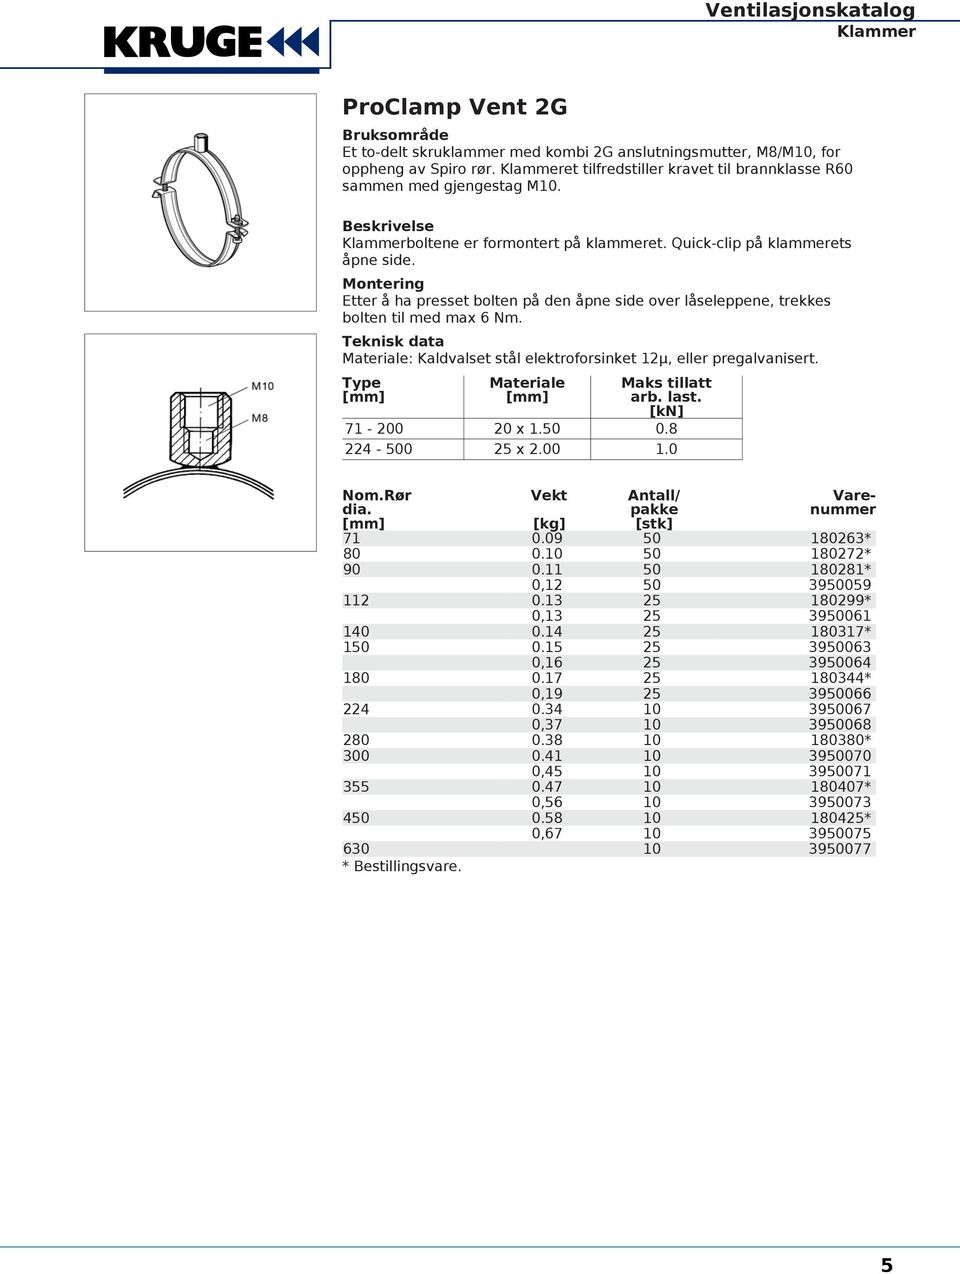 Teknisk data Materiale: Kaldvalset stål elektroforsinket 12µ, eller pregalvanisert. Type Materiale Maks tillatt arb. last. [kn] 71-200 20 x 1.50 0.8 224-500 25 x 2.00 1.0 Nom.Rør Vekt Antall/ dia.